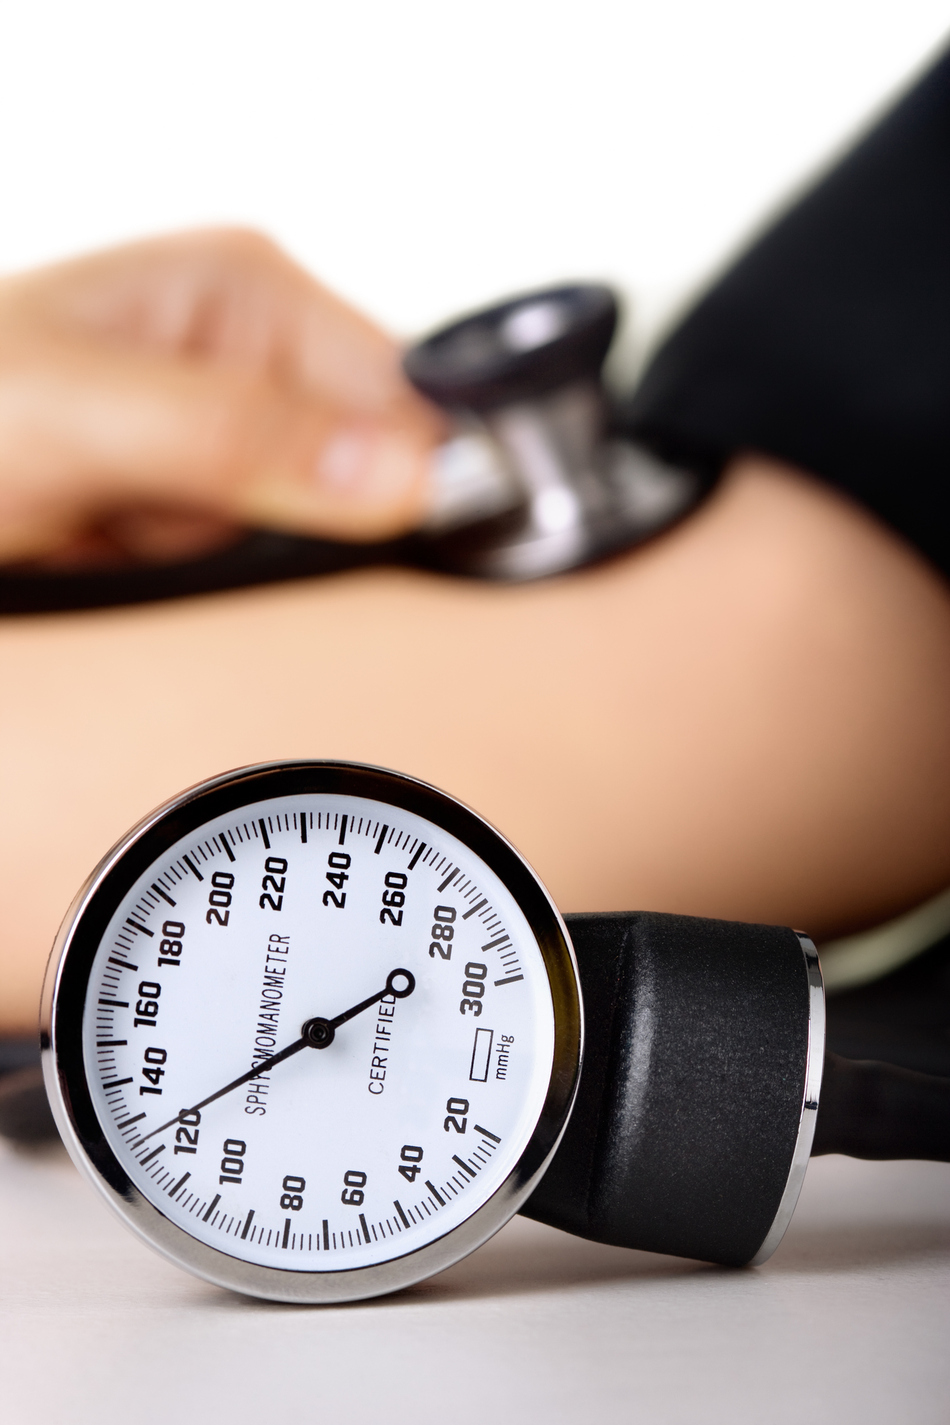 ER or Not: High Blood Pressure